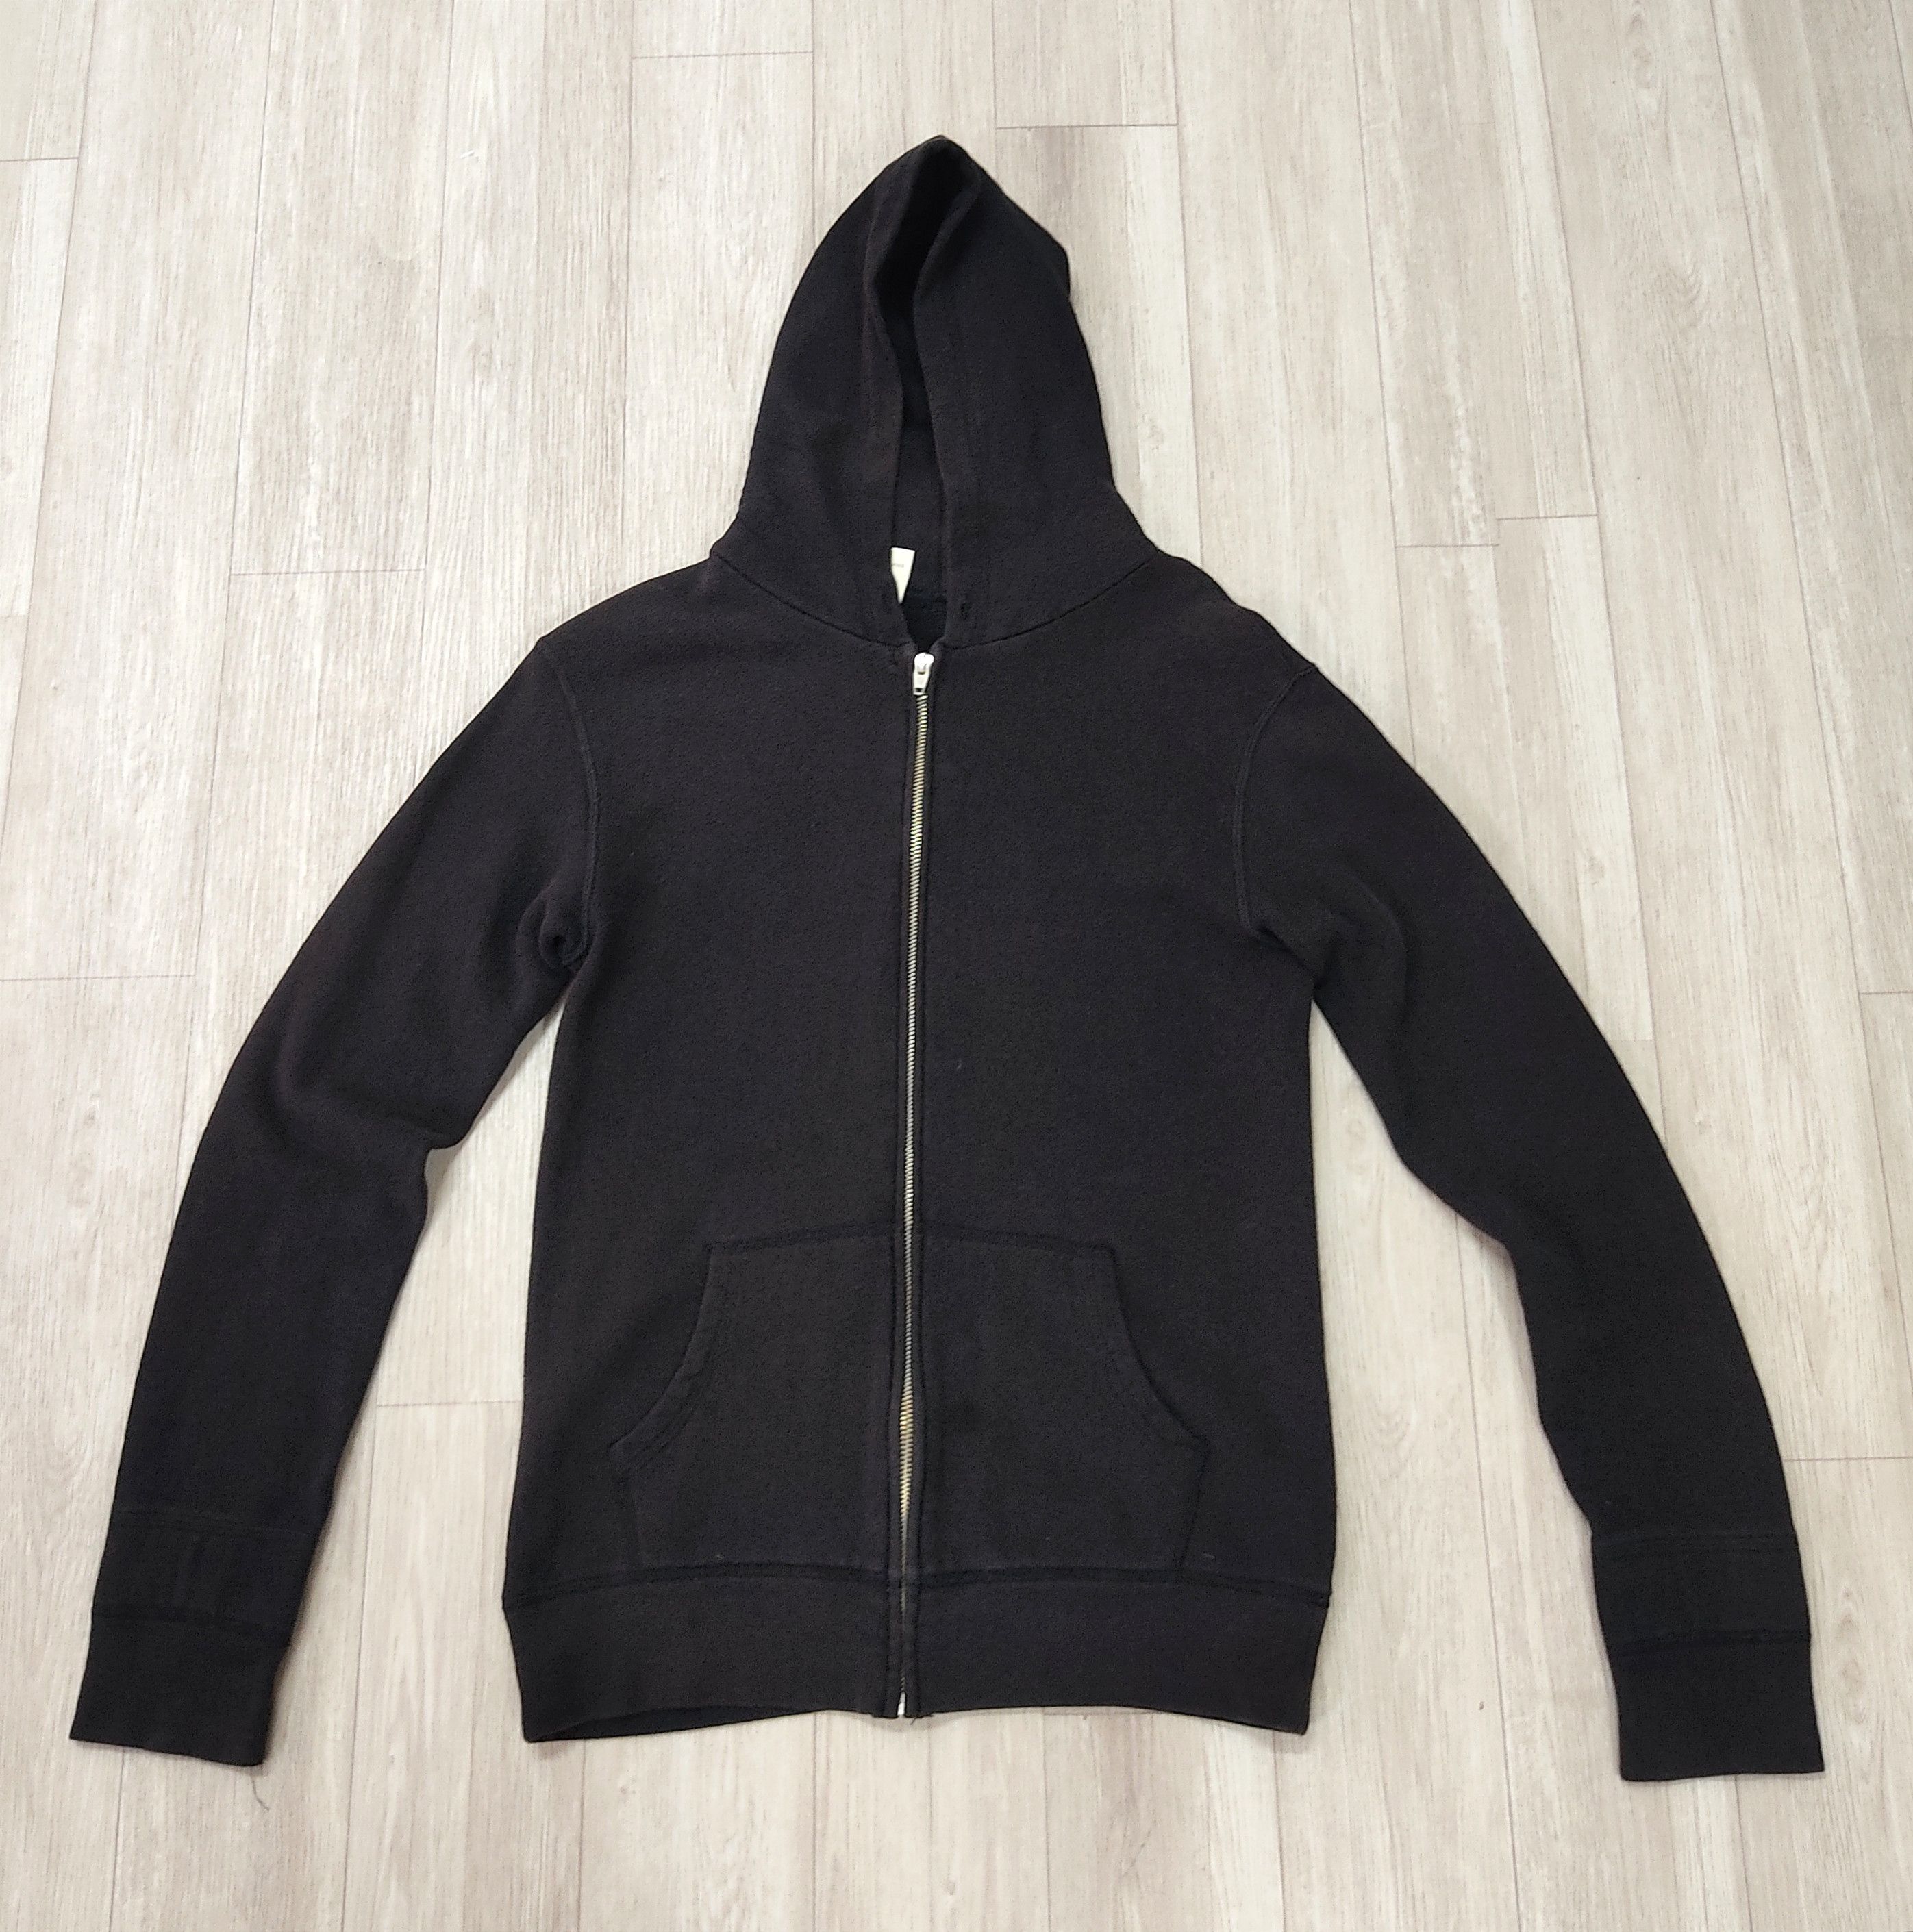 N. HOOLYWOOD Plain Black Zipper Hoodie Sweatshirt - 2